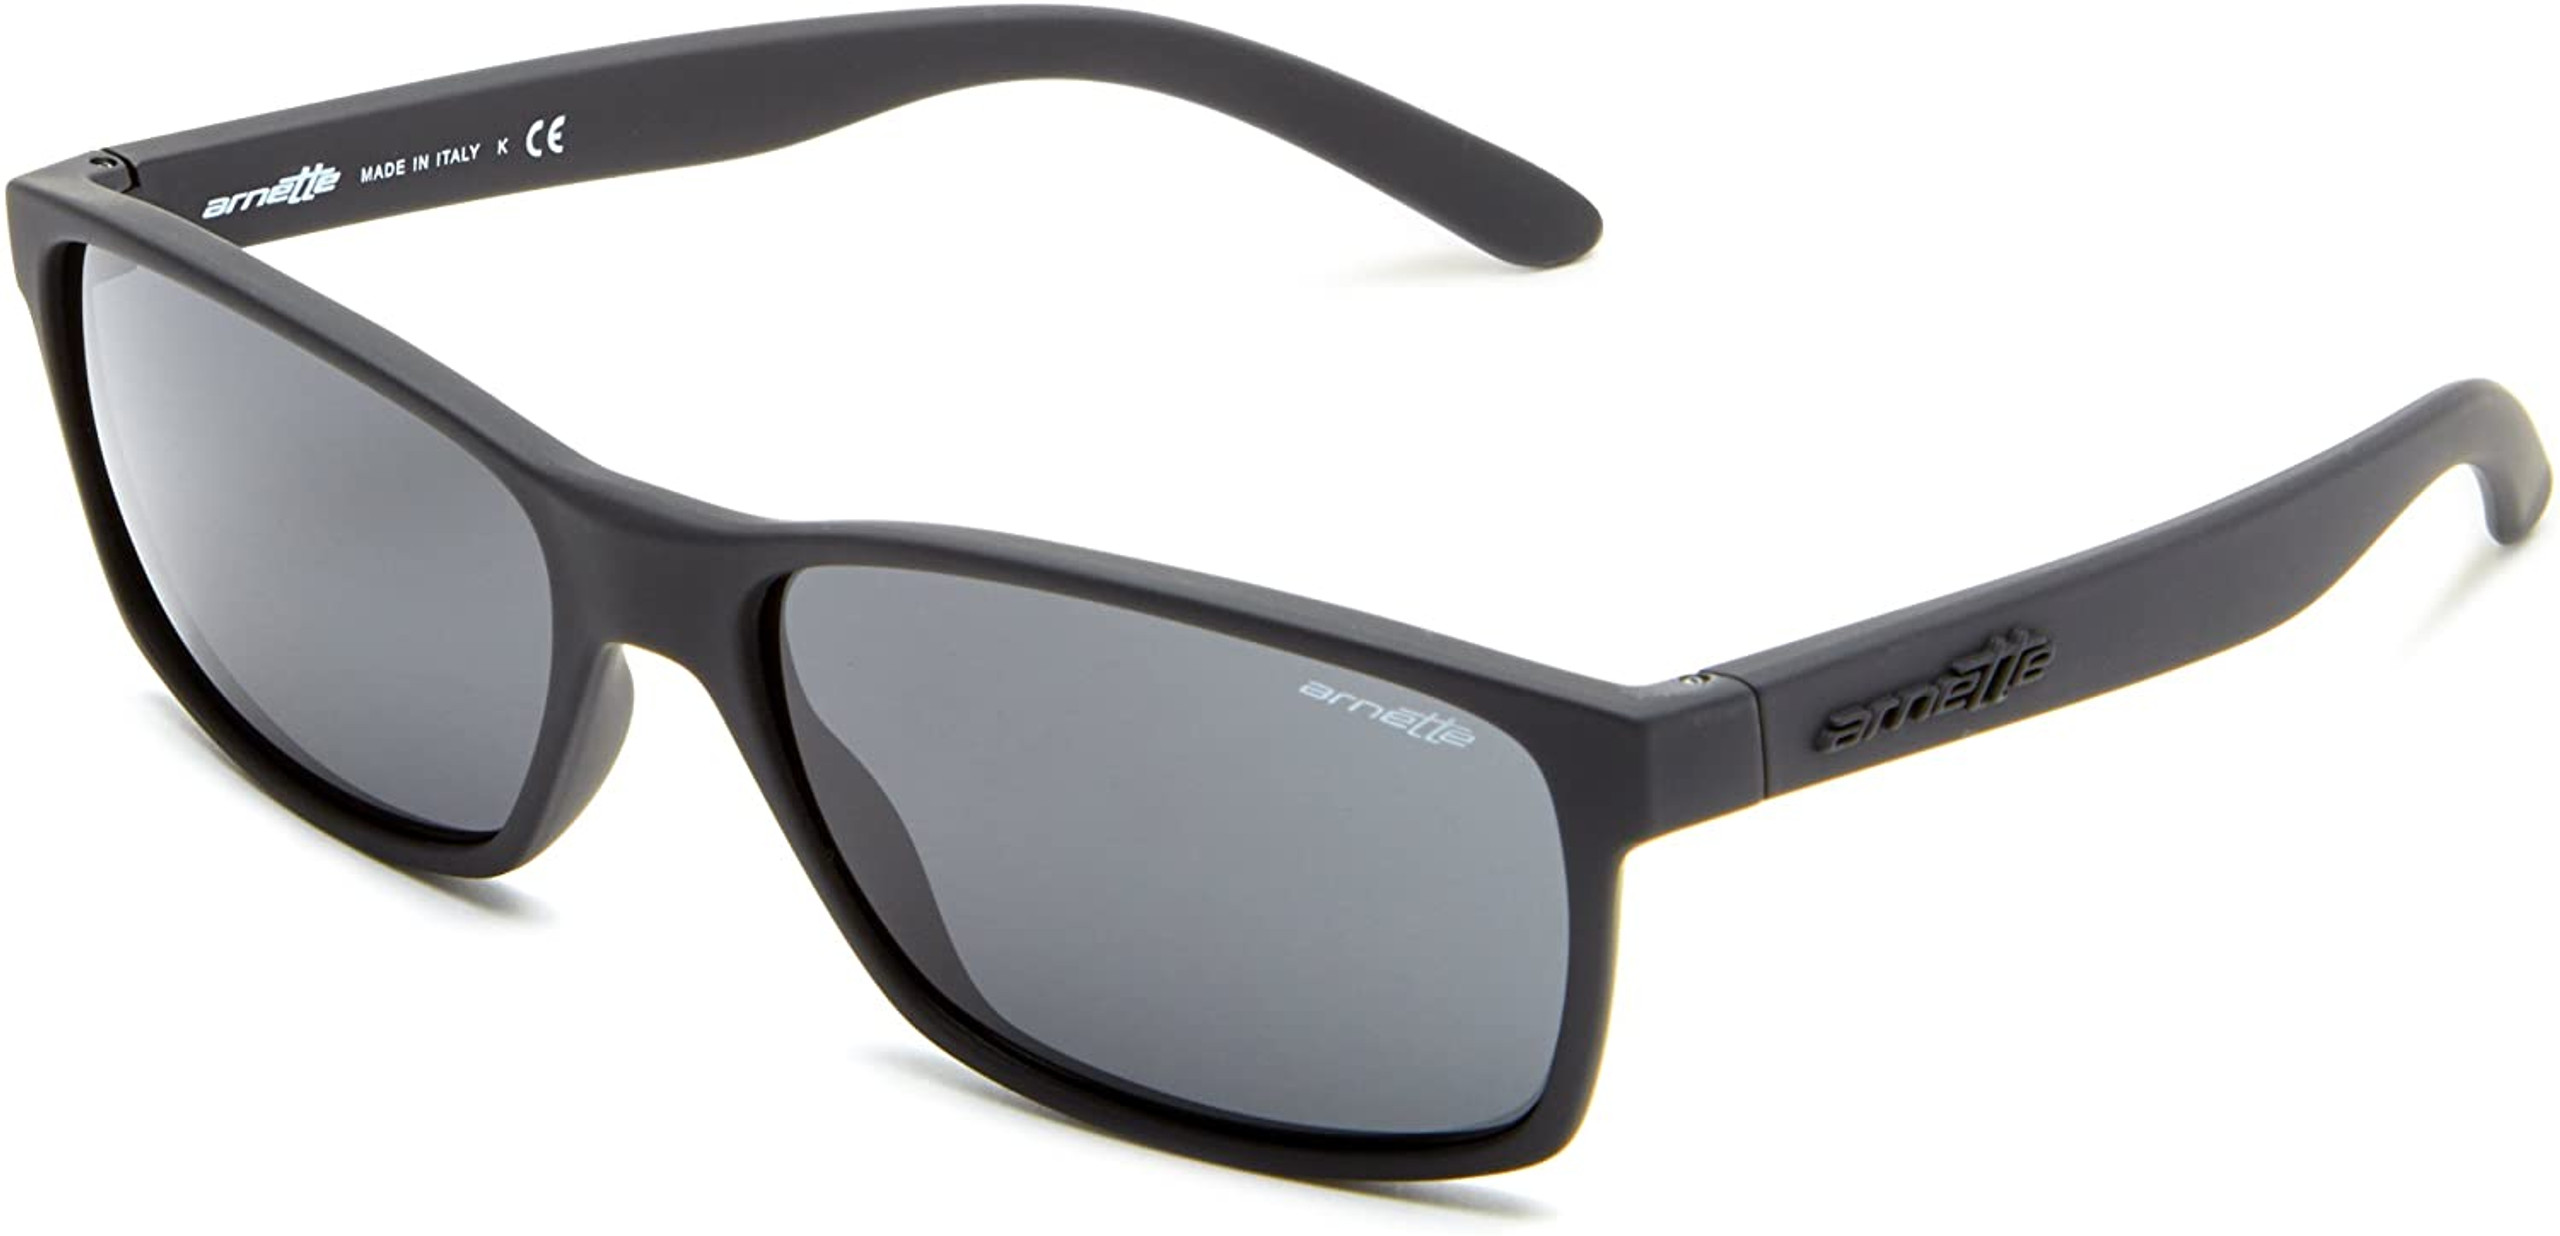 Arnette Designer Sunglasses Matte Black/Grey Lens 58mm - Speert ...